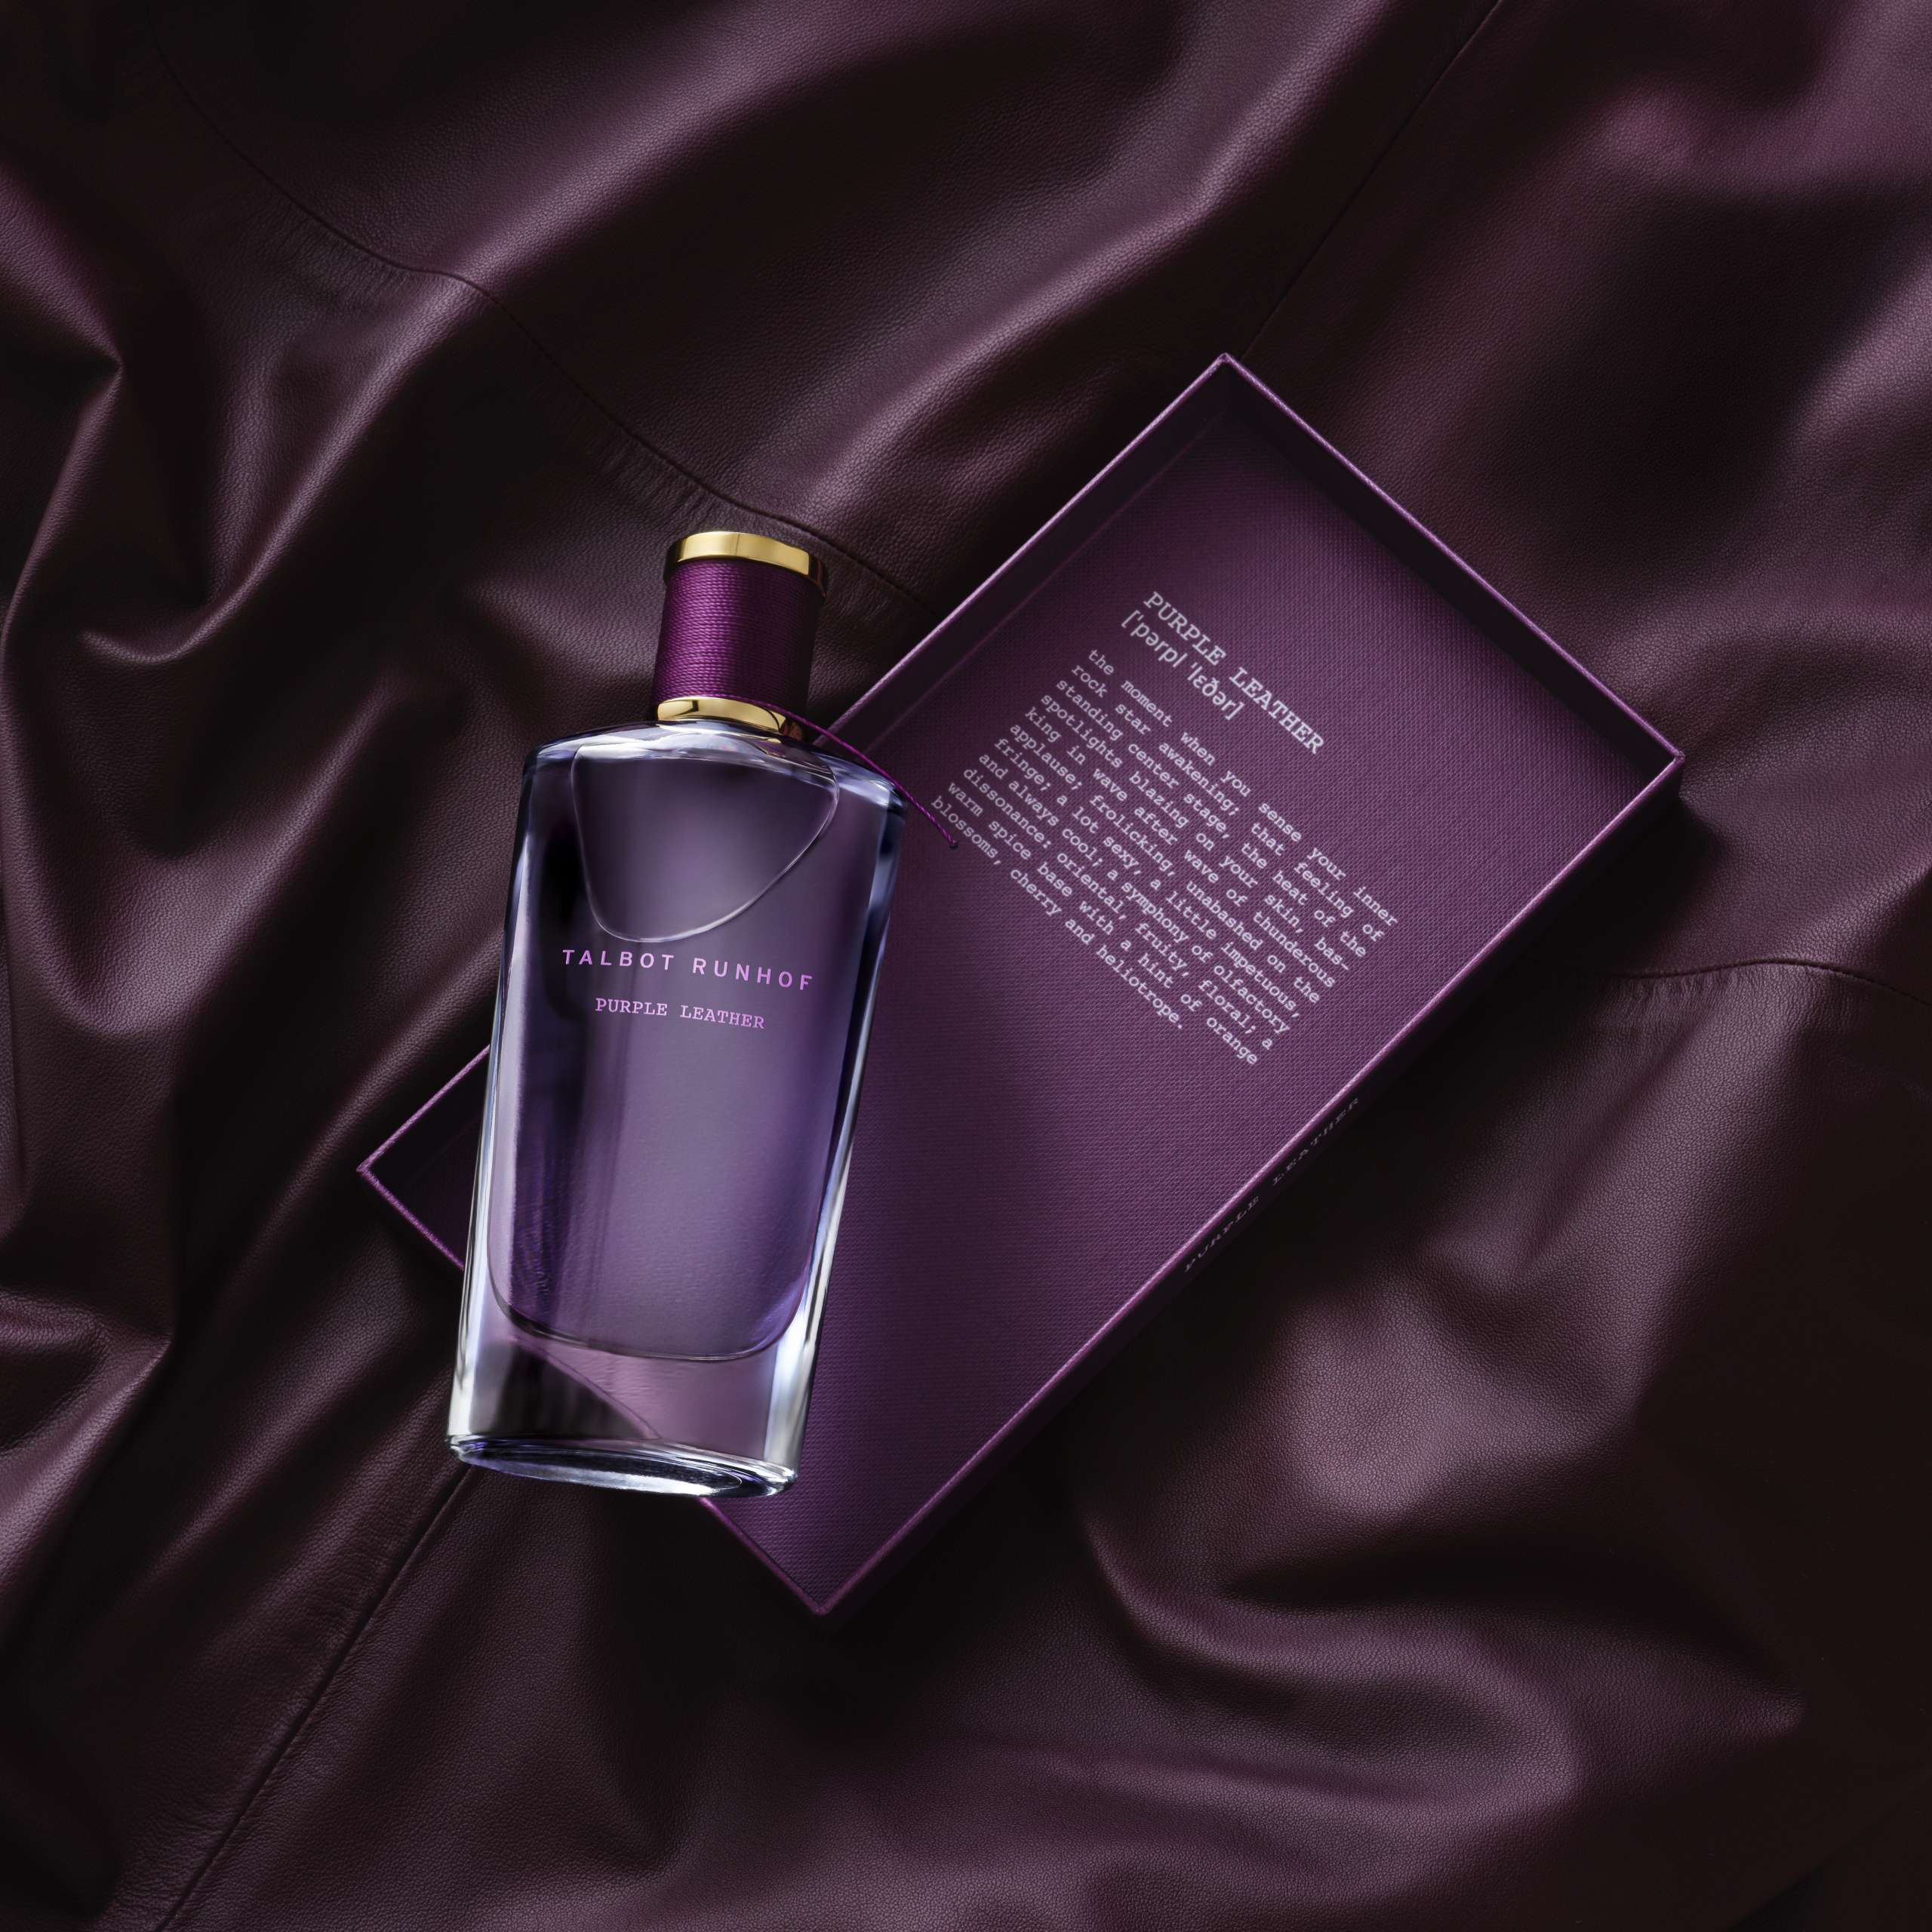 Formes de Luxe - Quel avenir pour le parfum ? by INFOPRO DIGITAL - Issuu